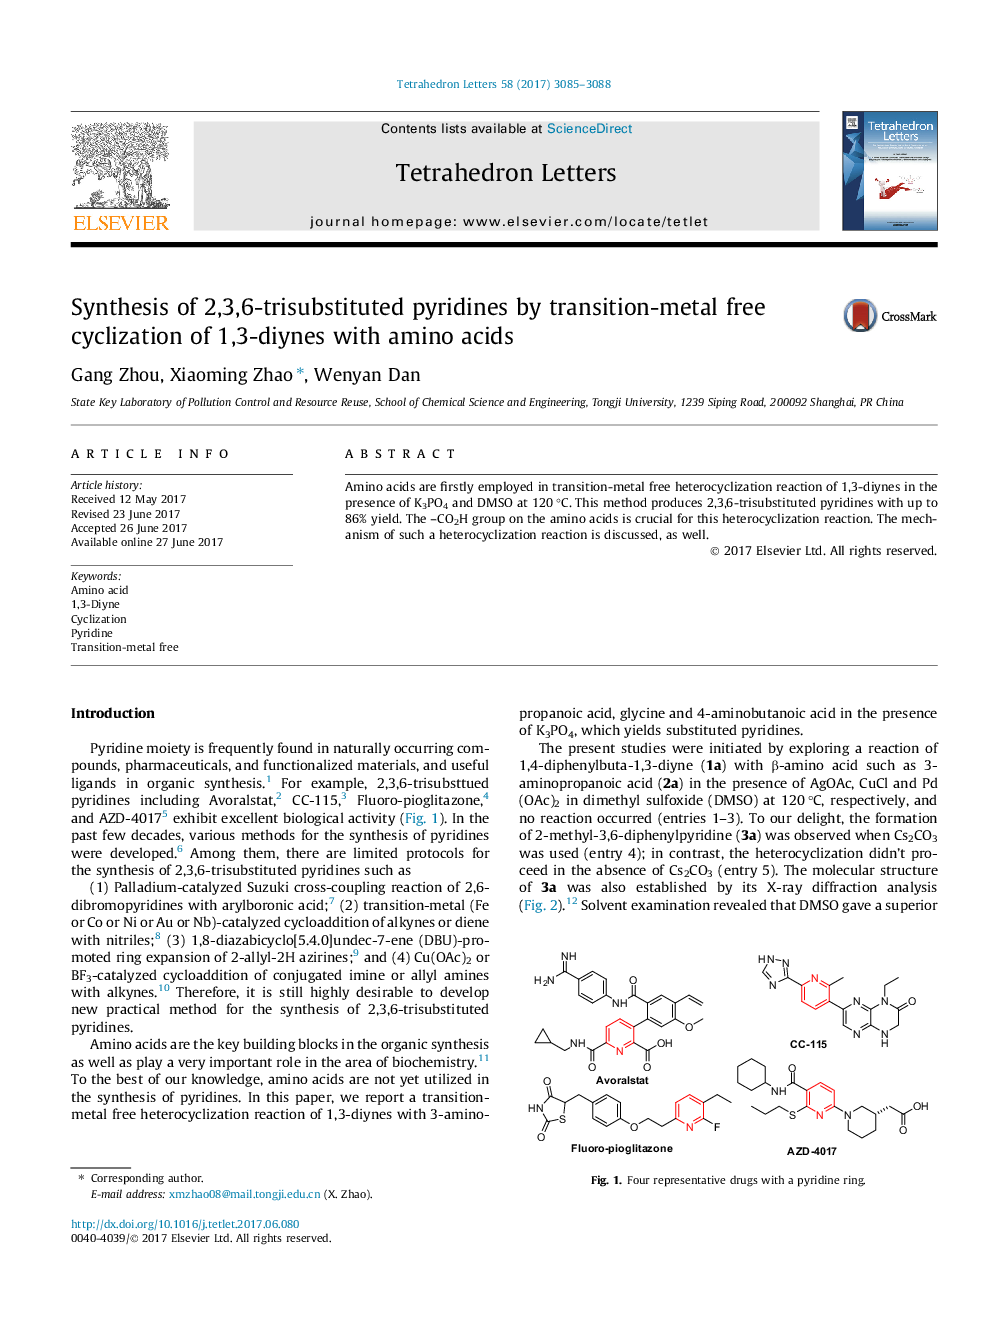 سنتز پیریدین های 2،3،6-تری باکتری با سیکلوزیون آزاد بدون تبدیل فلزی 1،3-دیین با اسیدهای آمینه 